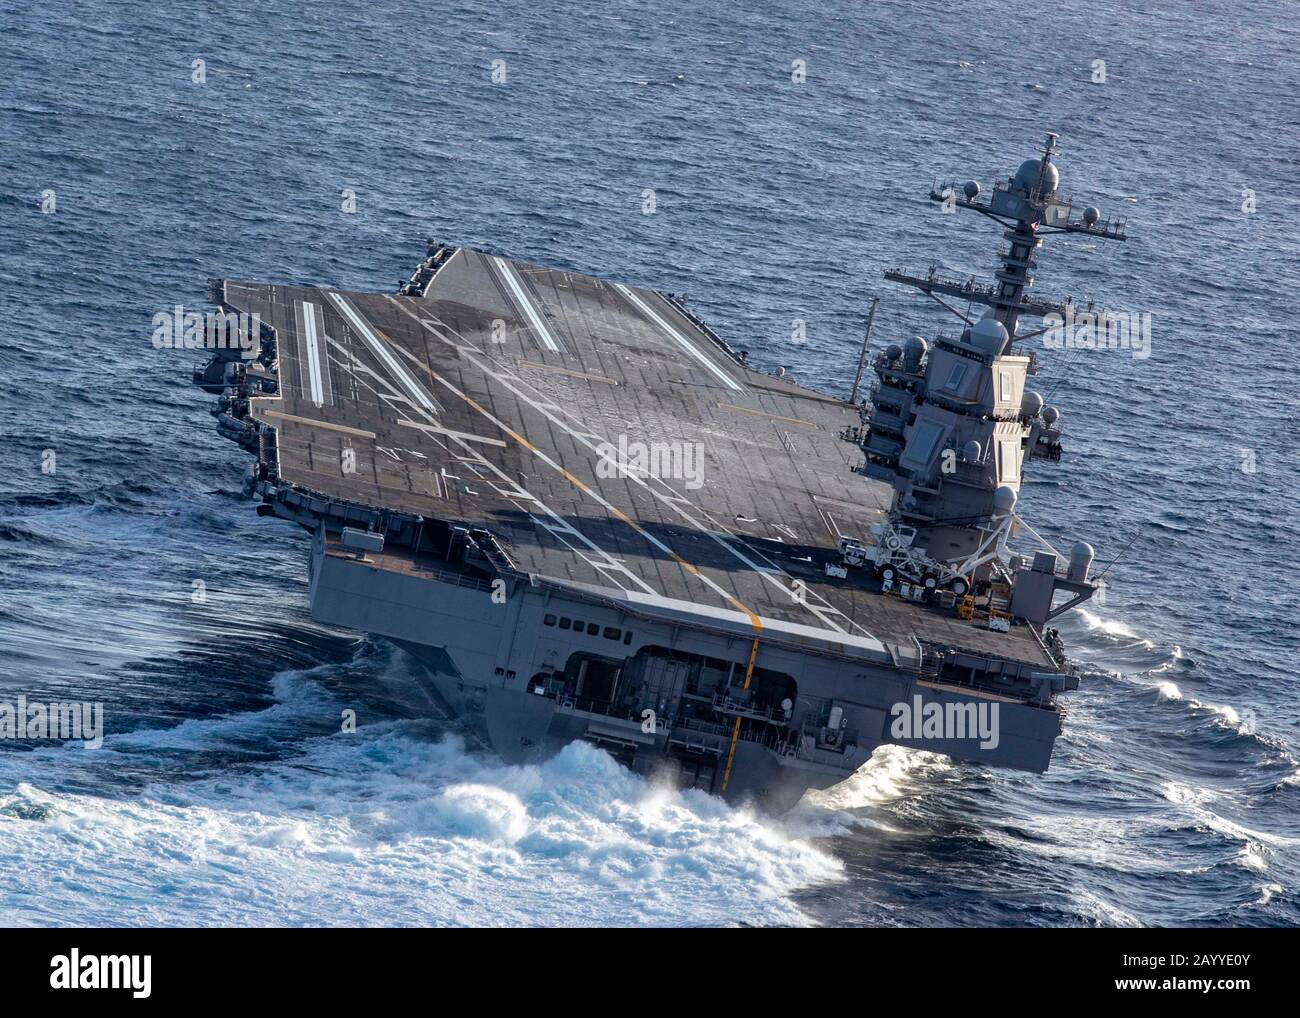 Der nuklearbetriebene Flugzeugträger USS Gerald R. Ford der US-Marine Nimitz führt im Rahmen von Seeversuchen Hochgeschwindigkeitsabbiegungen durch, nachdem der 15-monatige Einbau und der Shakedown am 29. Oktober 2019 im Atlantik erfolgt sind. Stockfoto